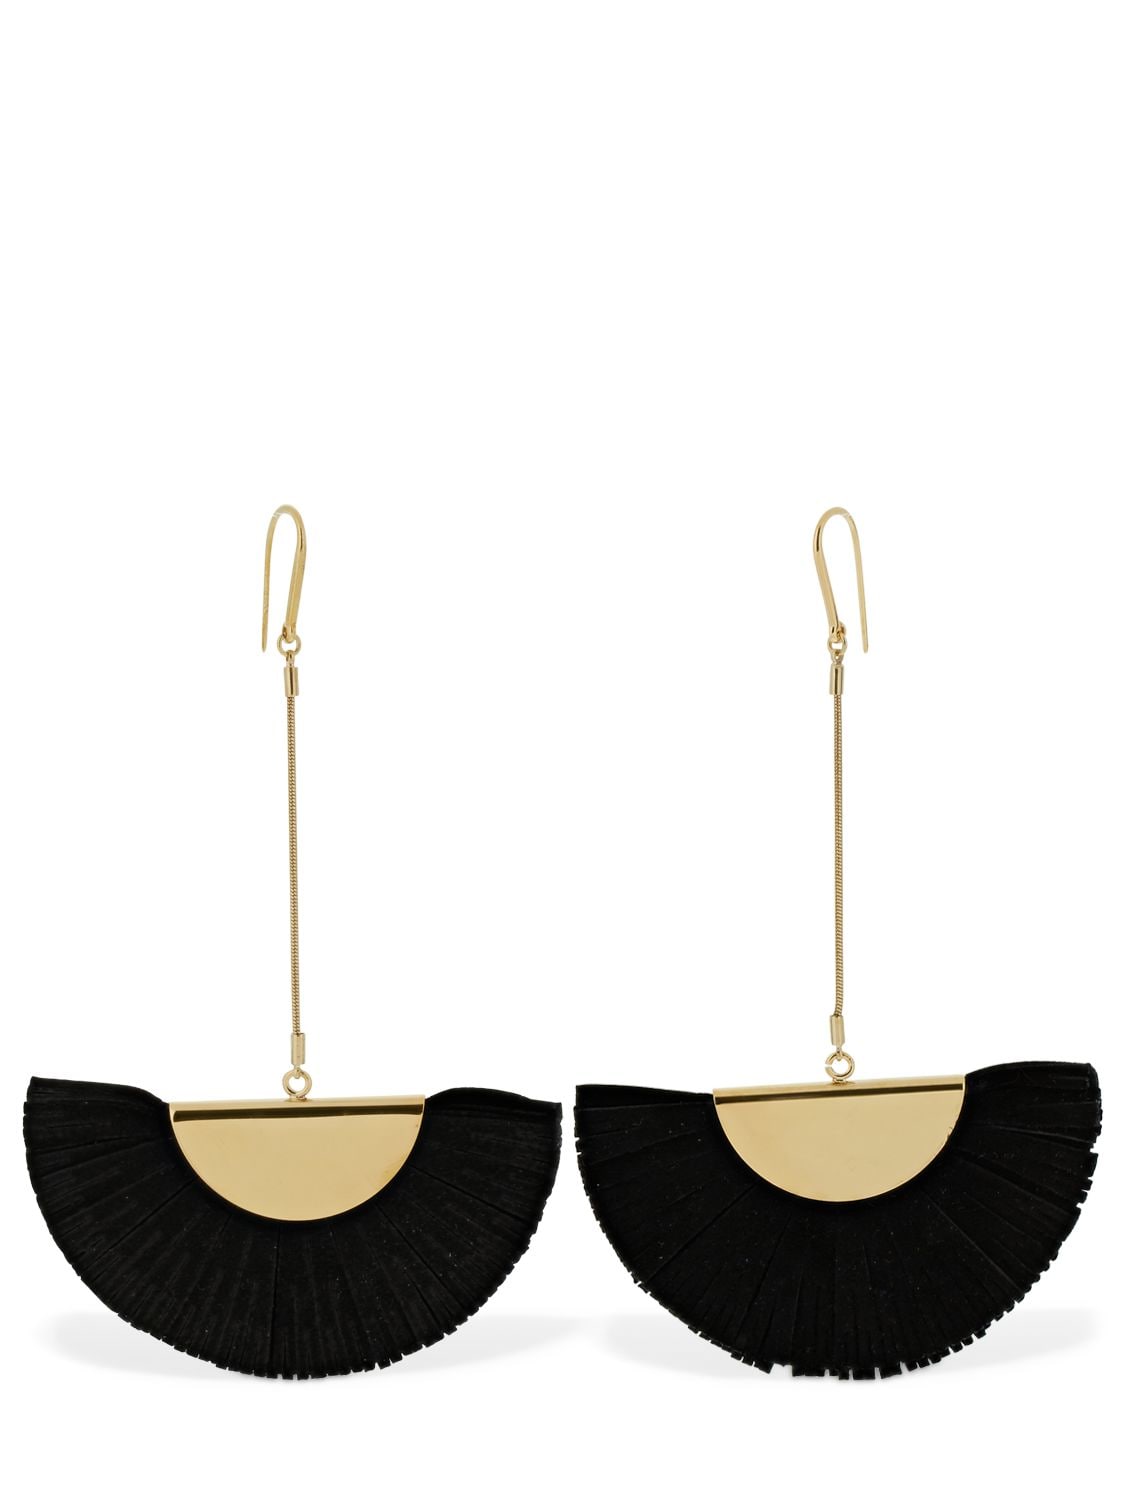 Isabel Marant Leather Folding Fan Earrings In Black,gold